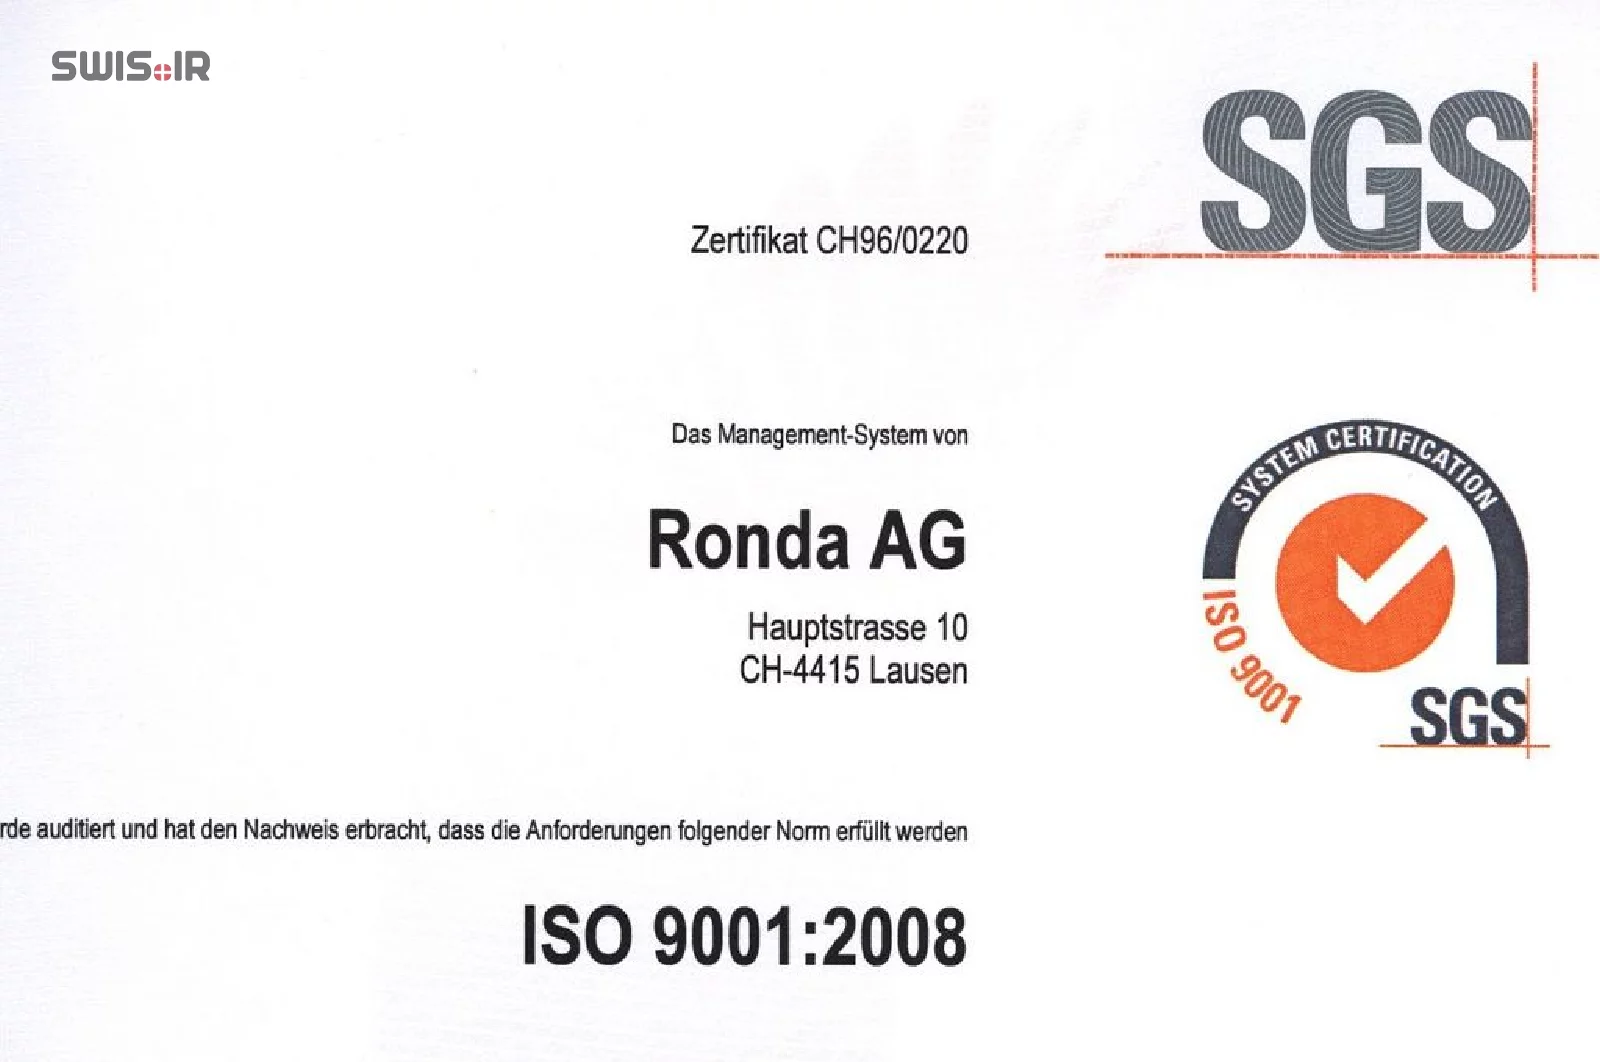 تصویری از جلد گواهینامه استاندارد ایزو 9001 شرکت روندا سوئیس